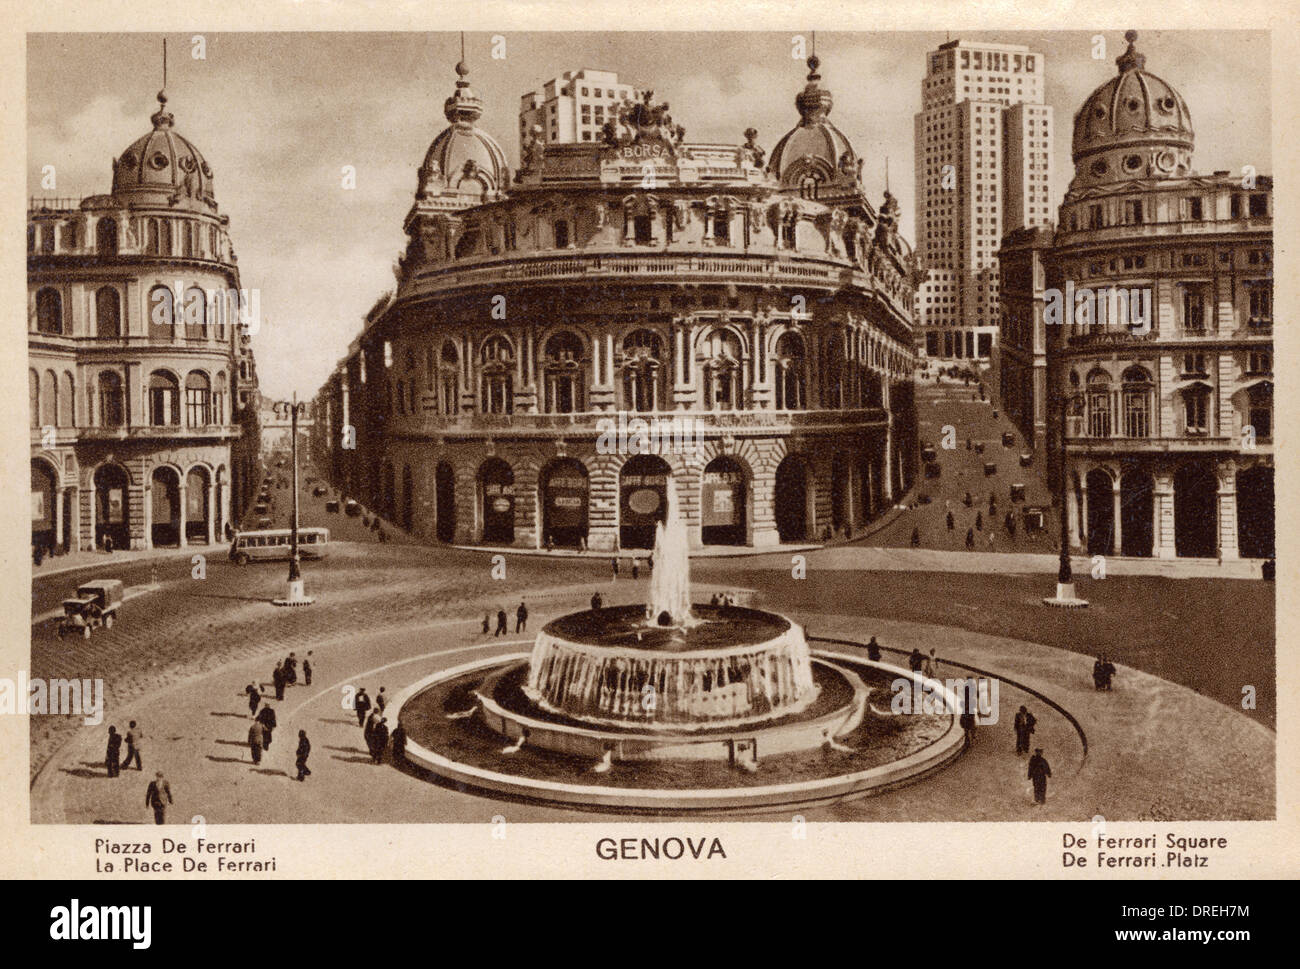 Genoa, Italy - De-Ferrari Square Stock Photo - Alamy